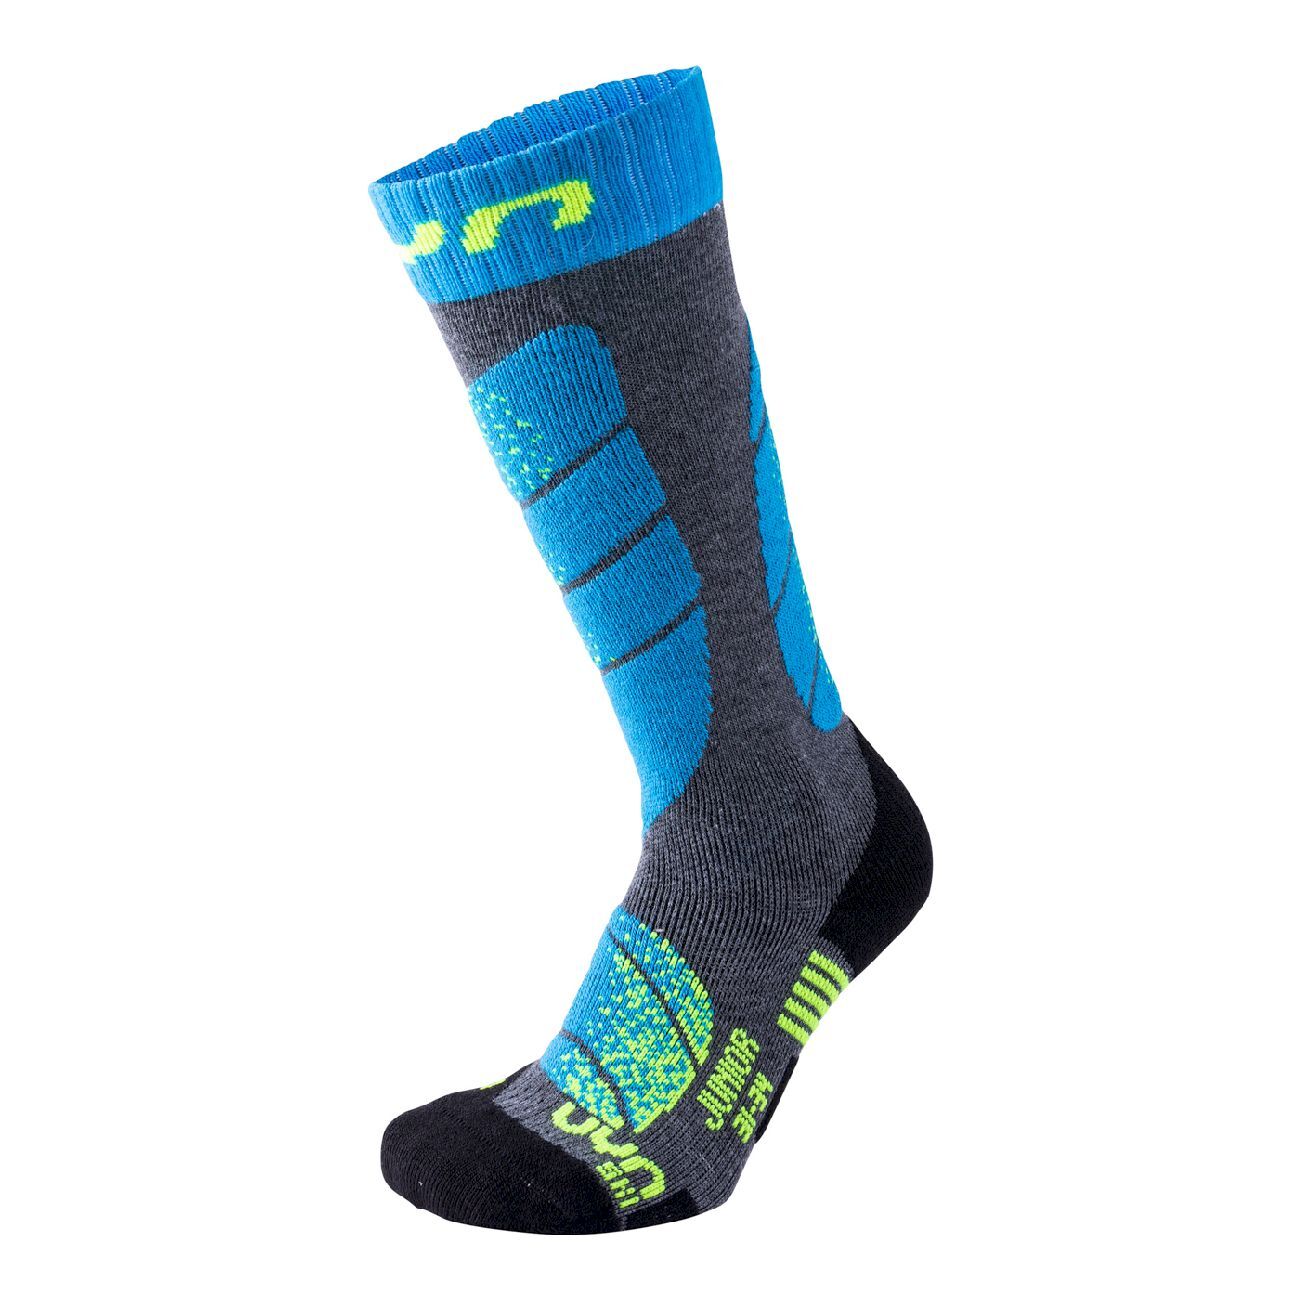 Uyn Junior Ski Socks - Calze da sci - Bambino